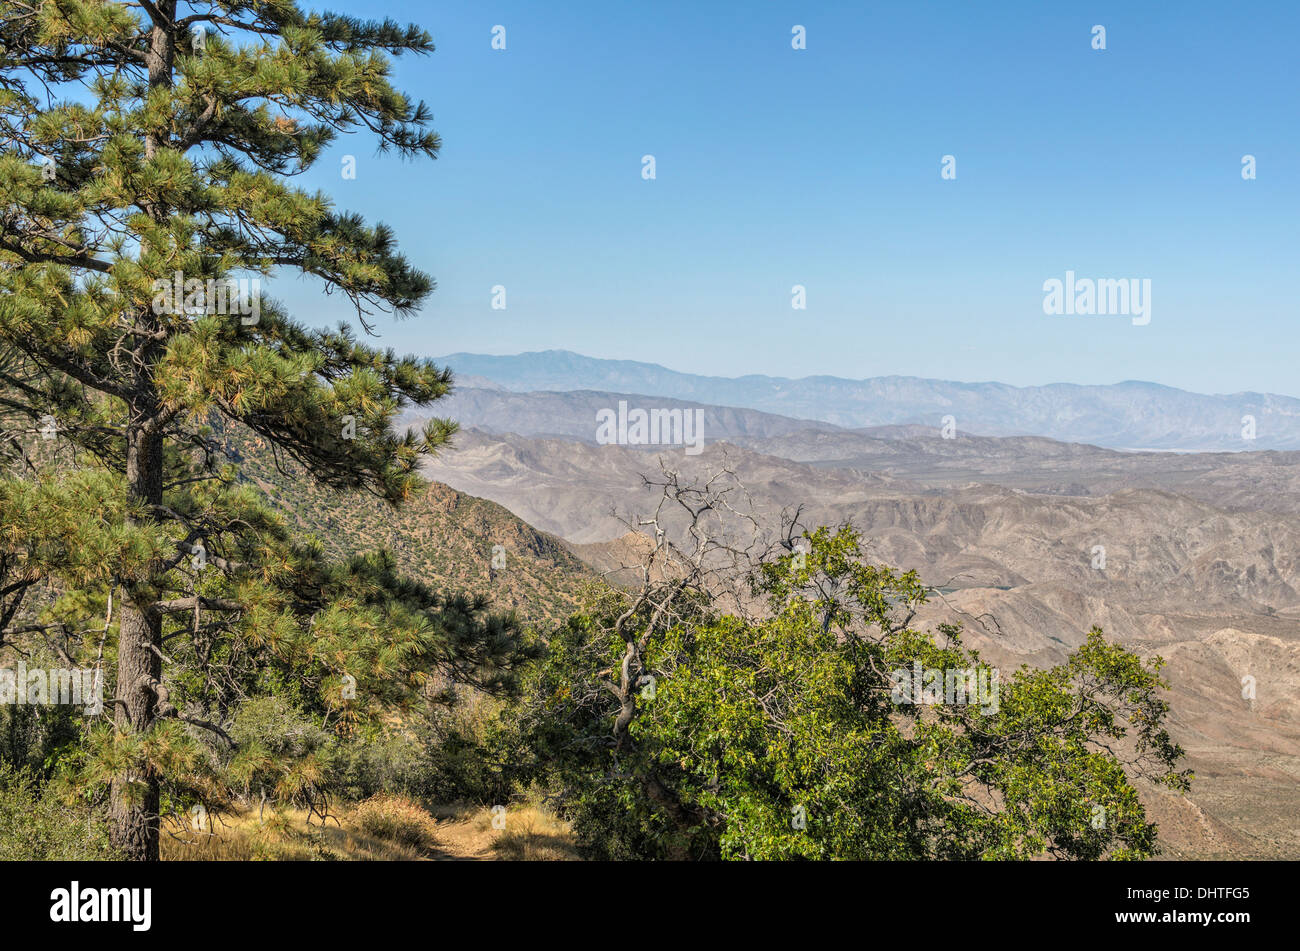 Blick auf Sturm Canyon und Laguna Mountains Cleveland National Forest Kalifornien Eiche Quercus SP. Kiefer Baum Textfreiraum Stockfoto